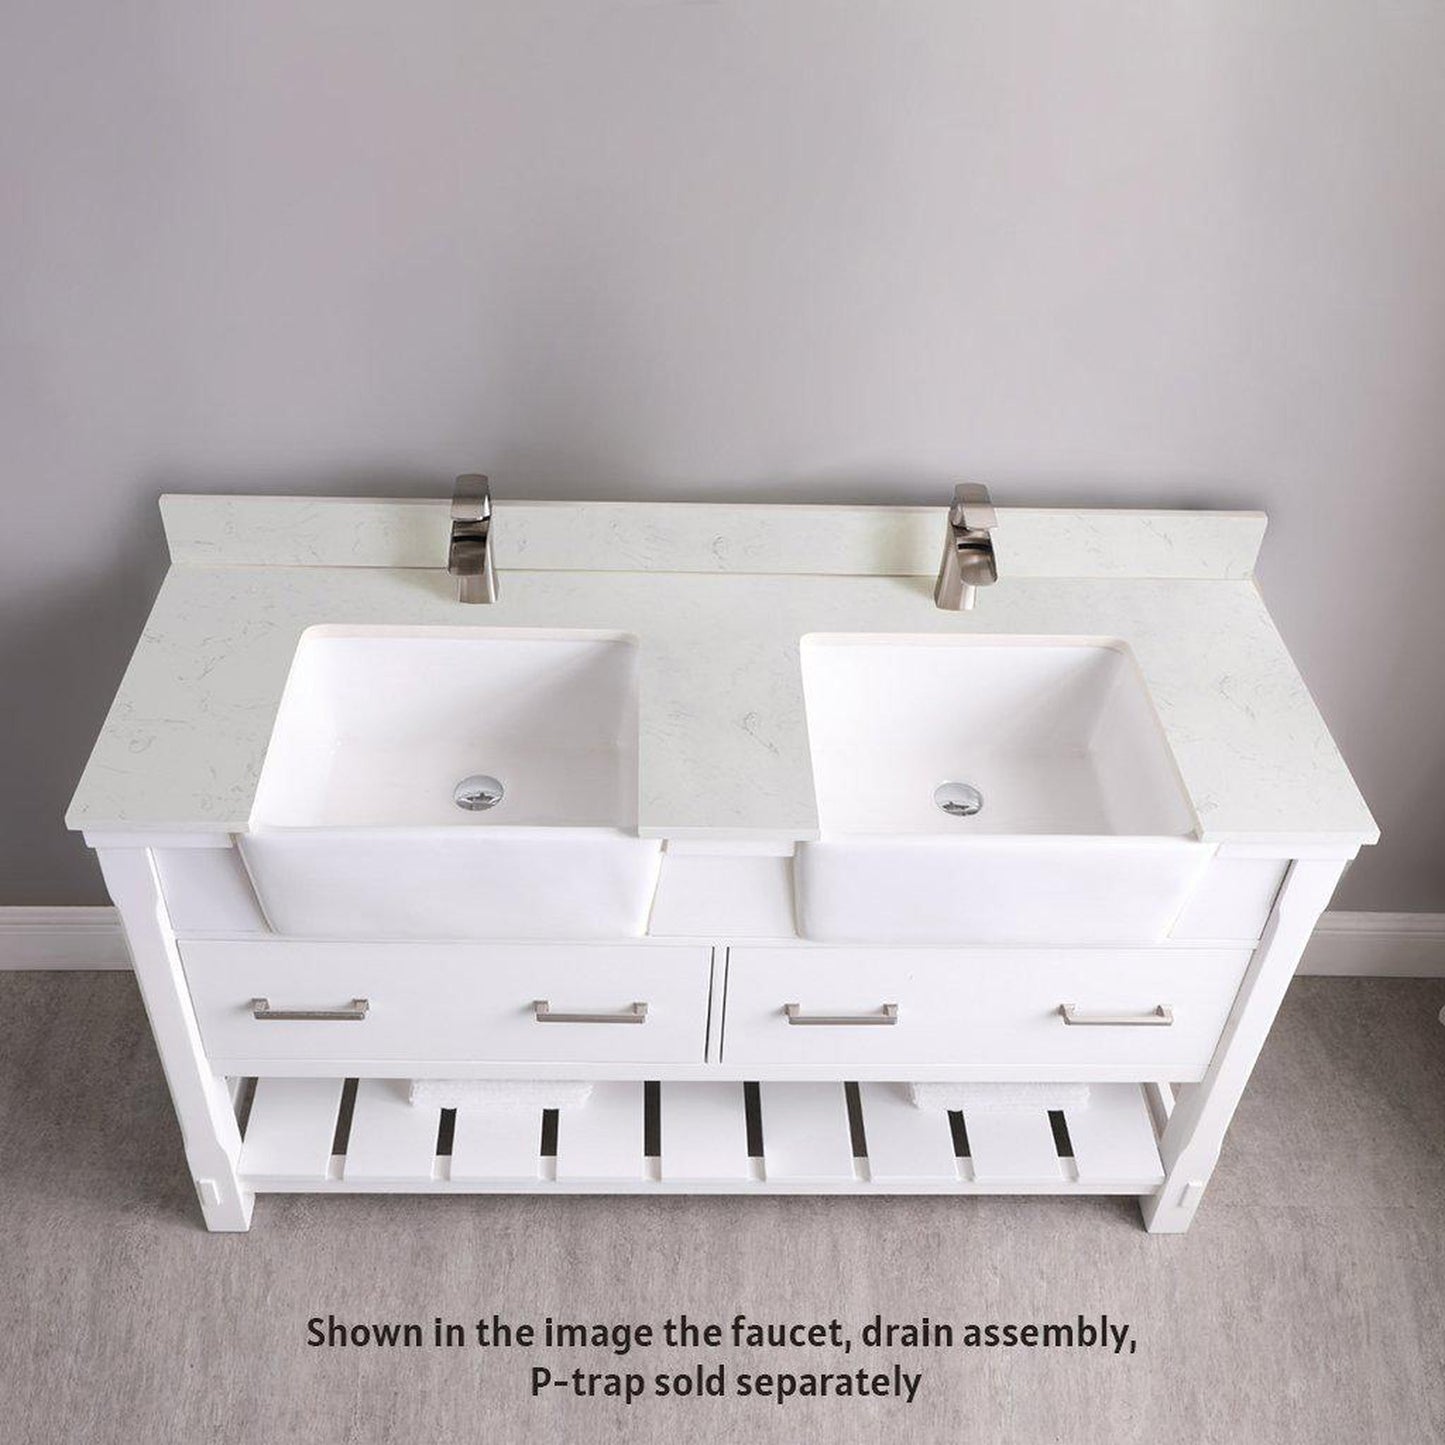 Altair Georgia 60" Double White Freestanding Bathroom Vanity Set With Aosta White Composite Stone Top, Two Rectangular Farmhouse Sinks, Overflow, and Backsplash